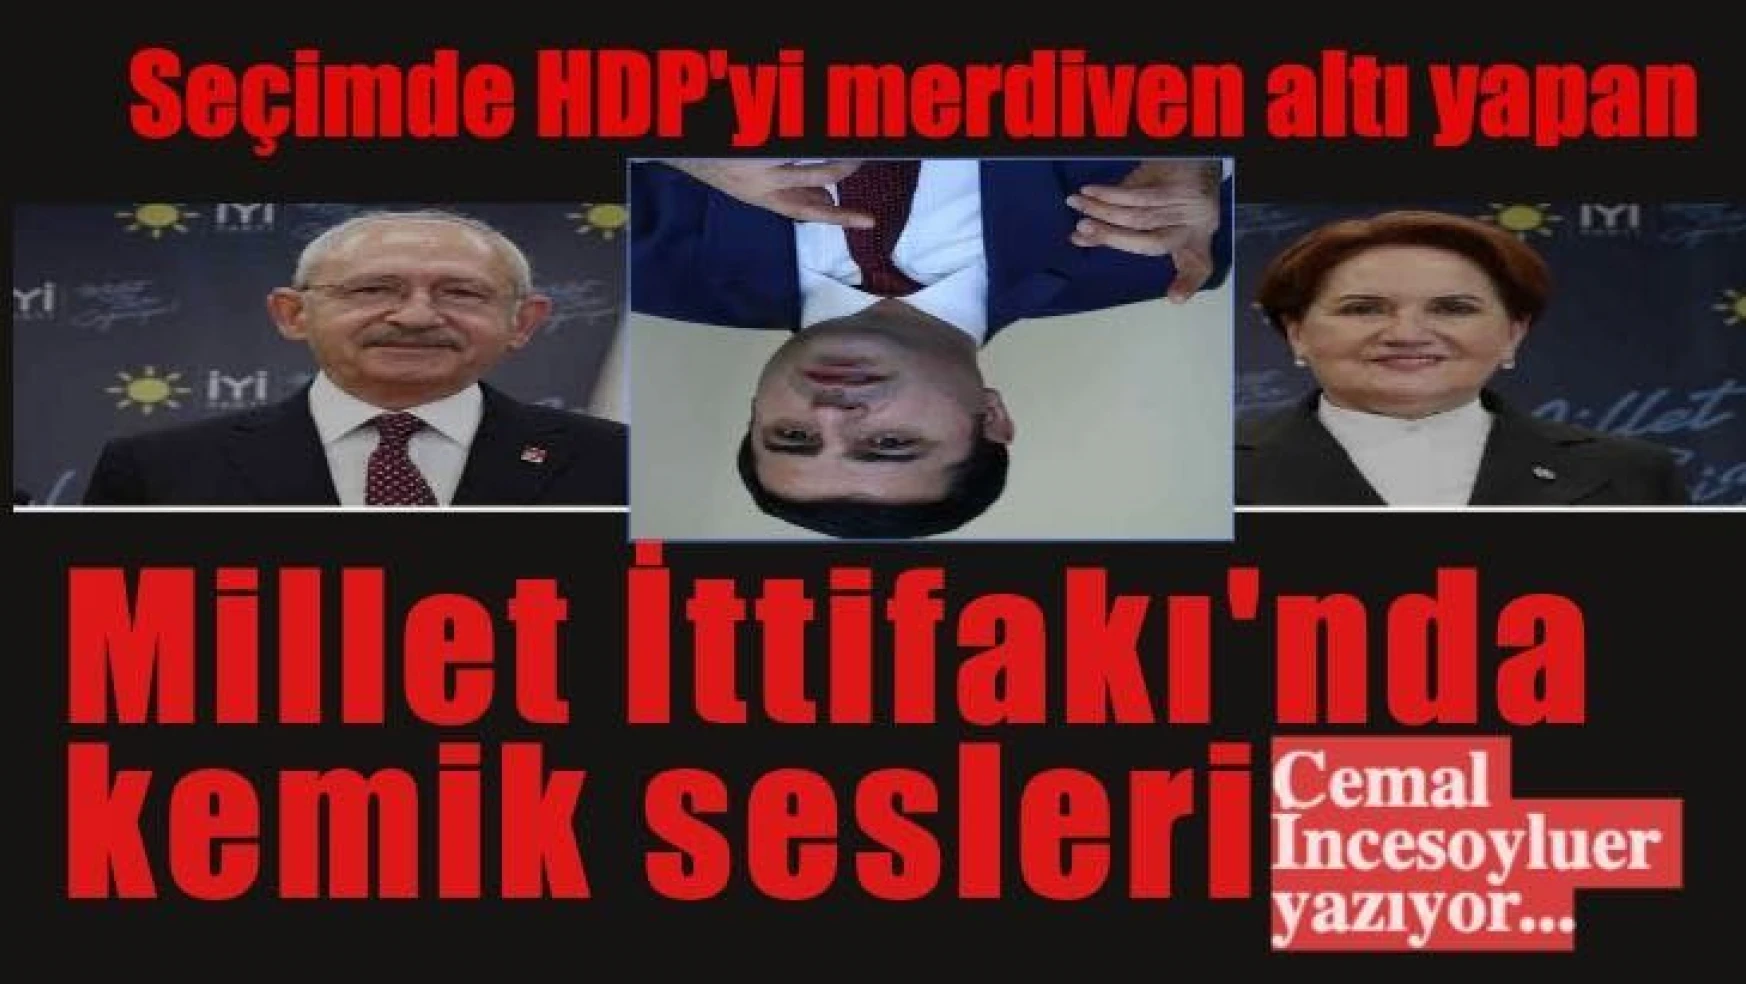 Yerel seçimde HDP'yi merdiven altı yapan Millet İttifak'ında kemik sesleri